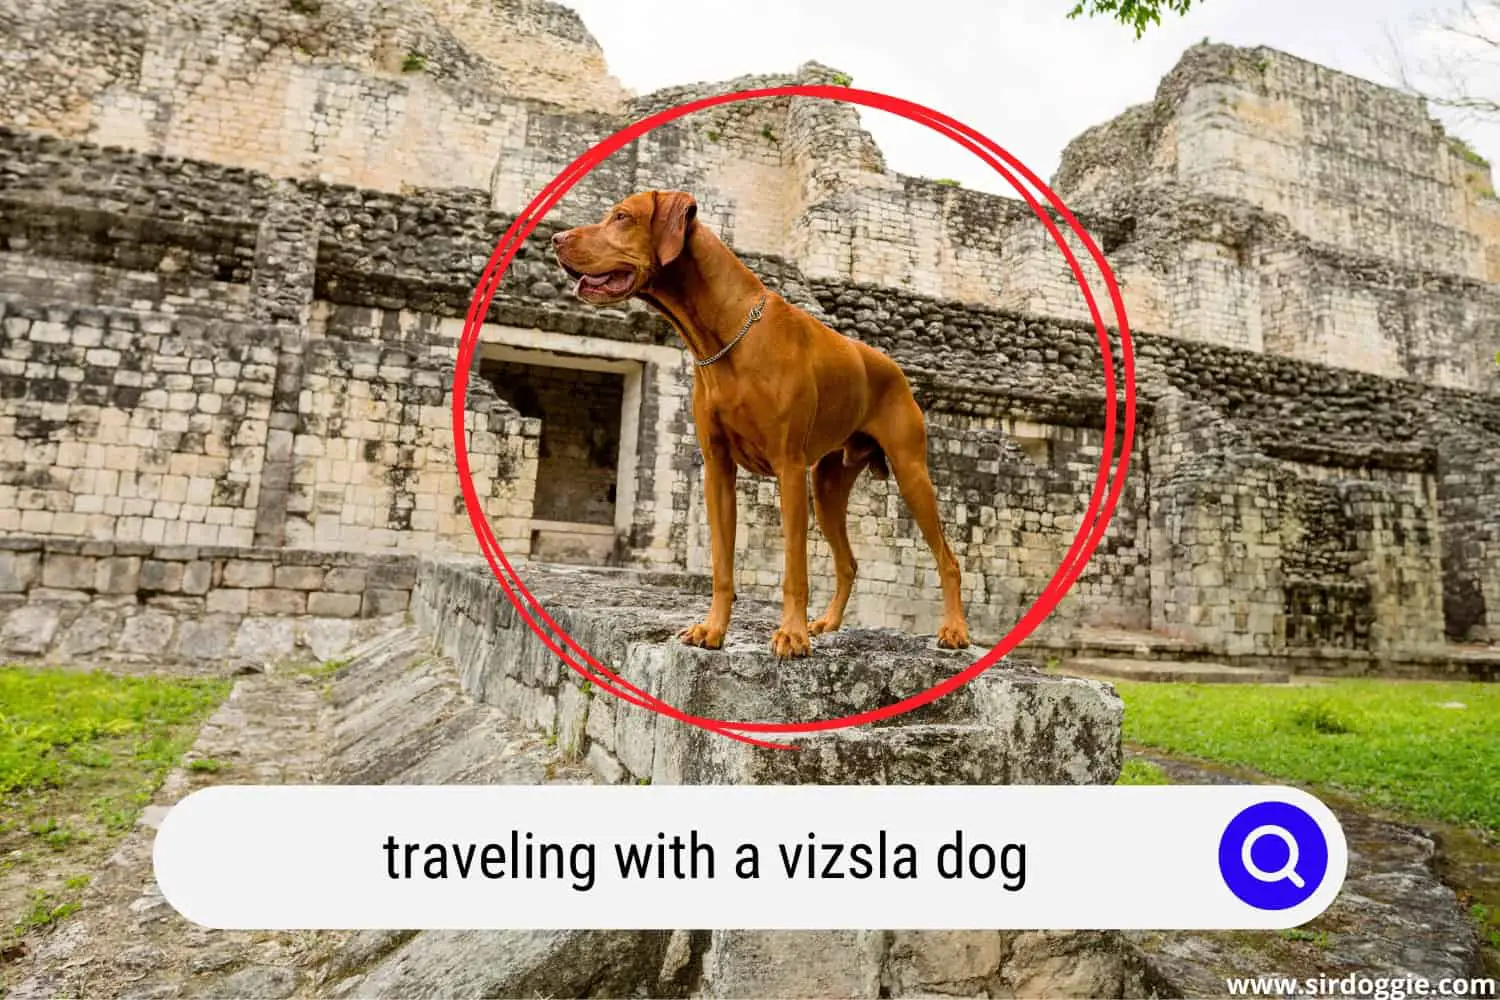 A Vizsla dog traveling